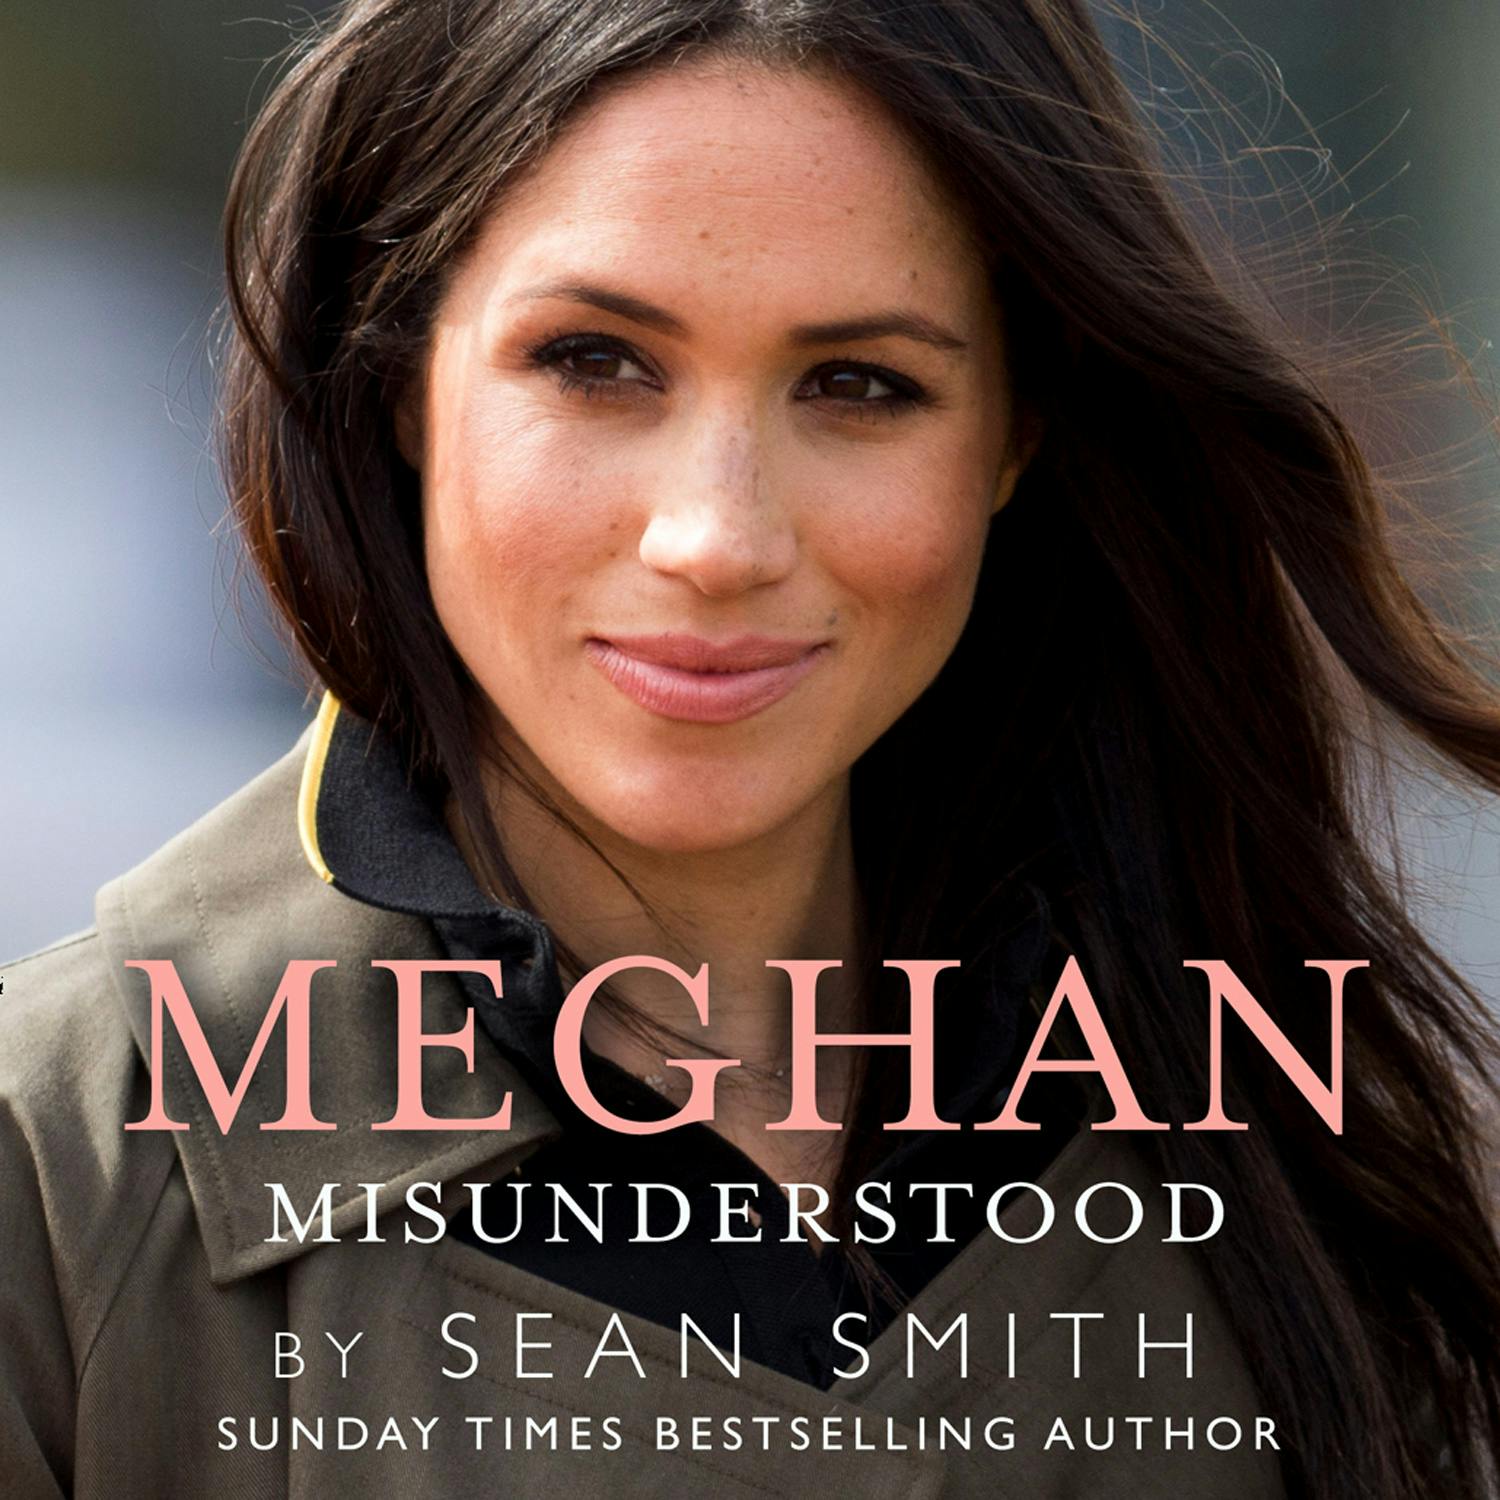 Meghan Misunderstood - undefined